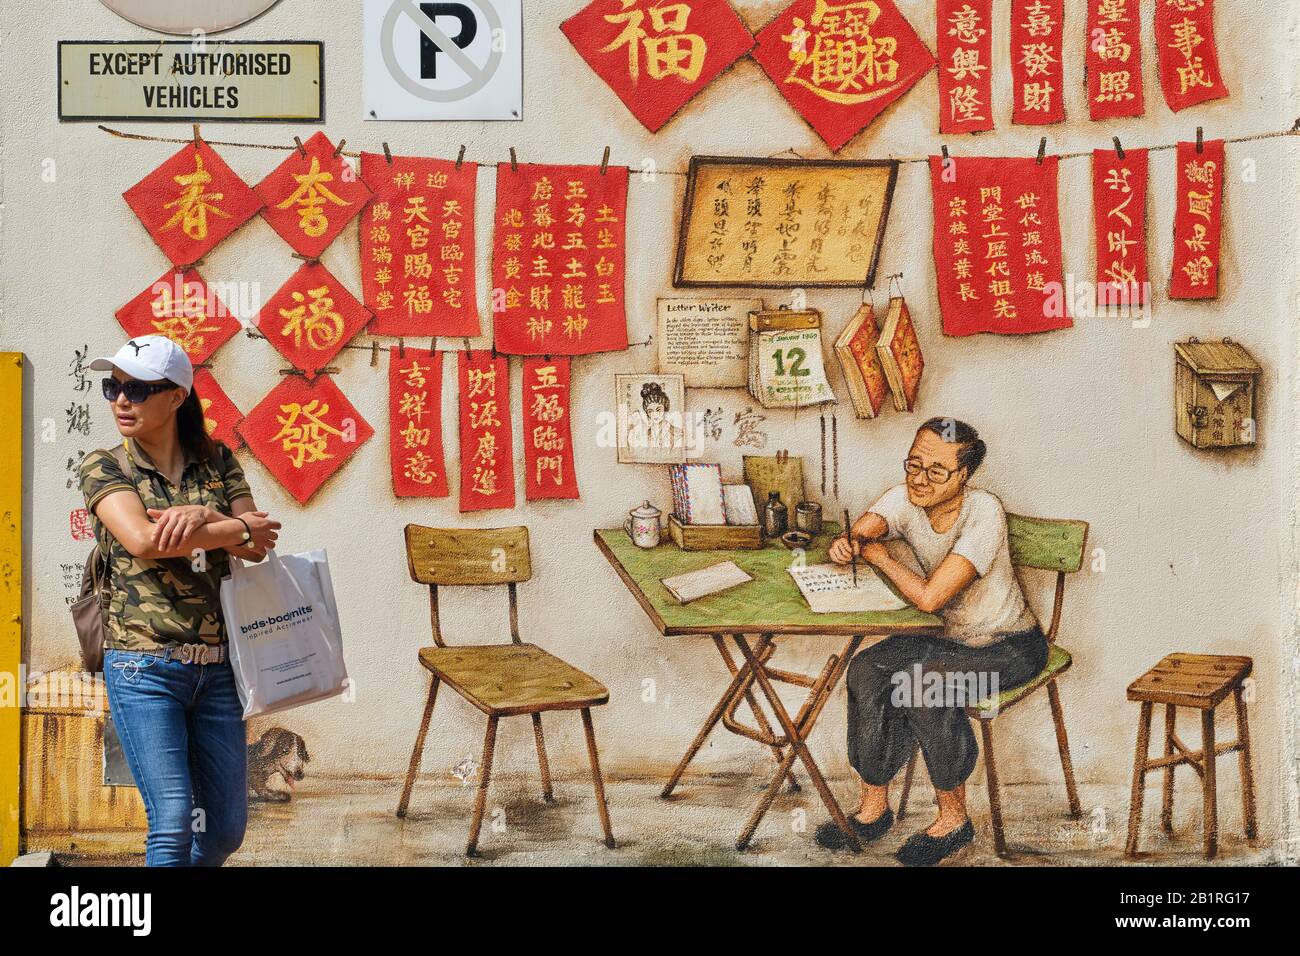 Una mujer pasa por una pintura mural en el Complejo Chinatown, Smith St., Chinatown, Singapur, que representa a un escritor de letras chino profesional y un caligrafía Foto de stock